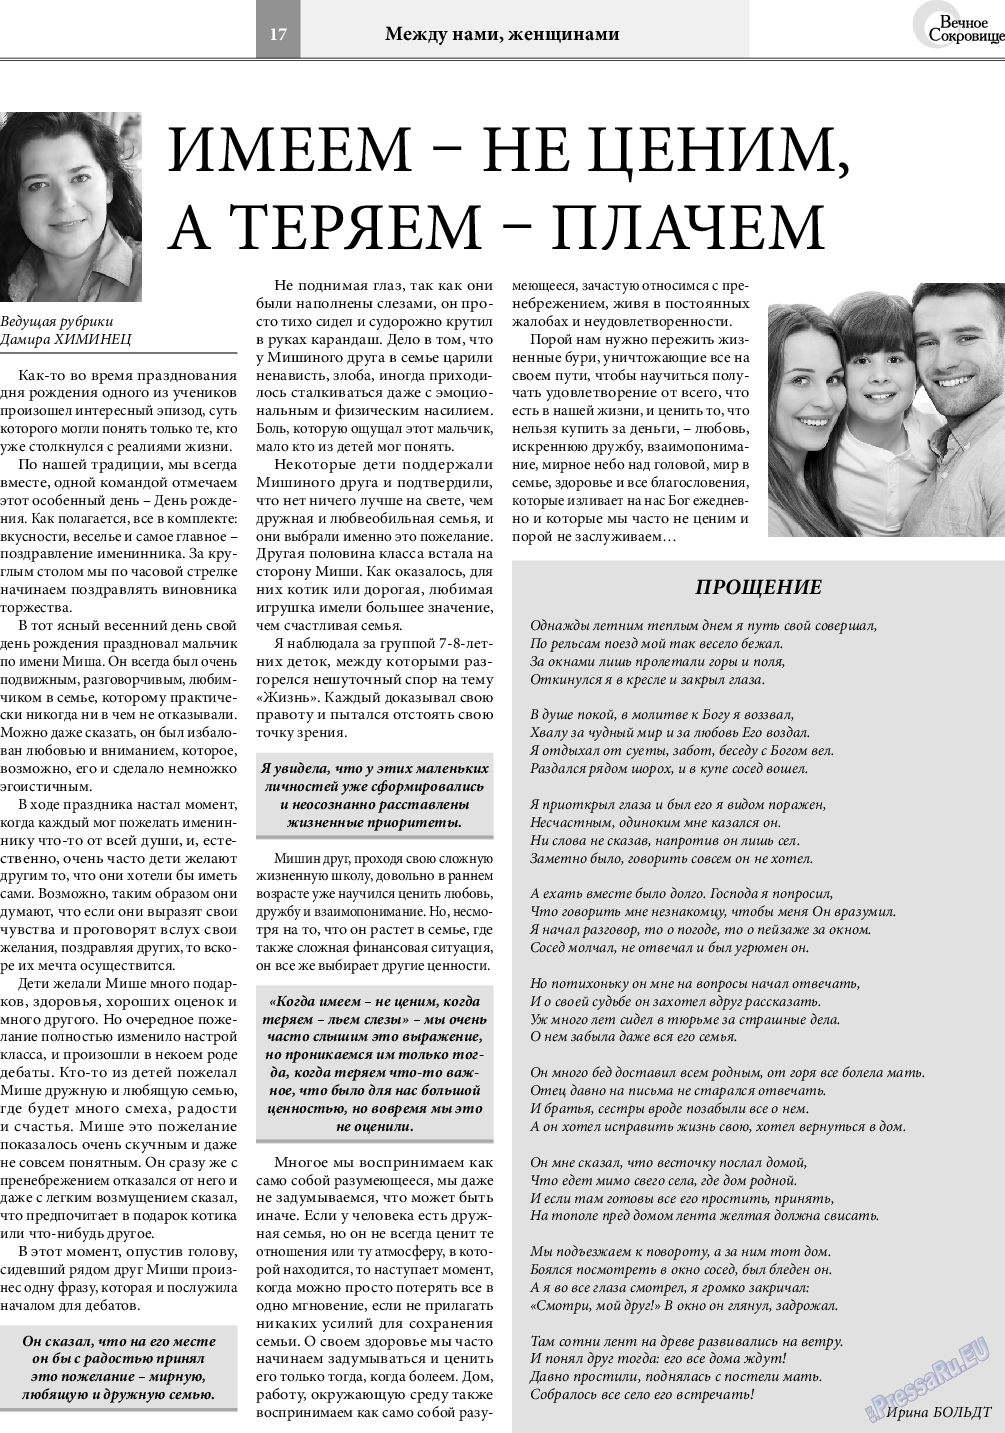 Вечное сокровище, газета. 2018 №4 стр.17